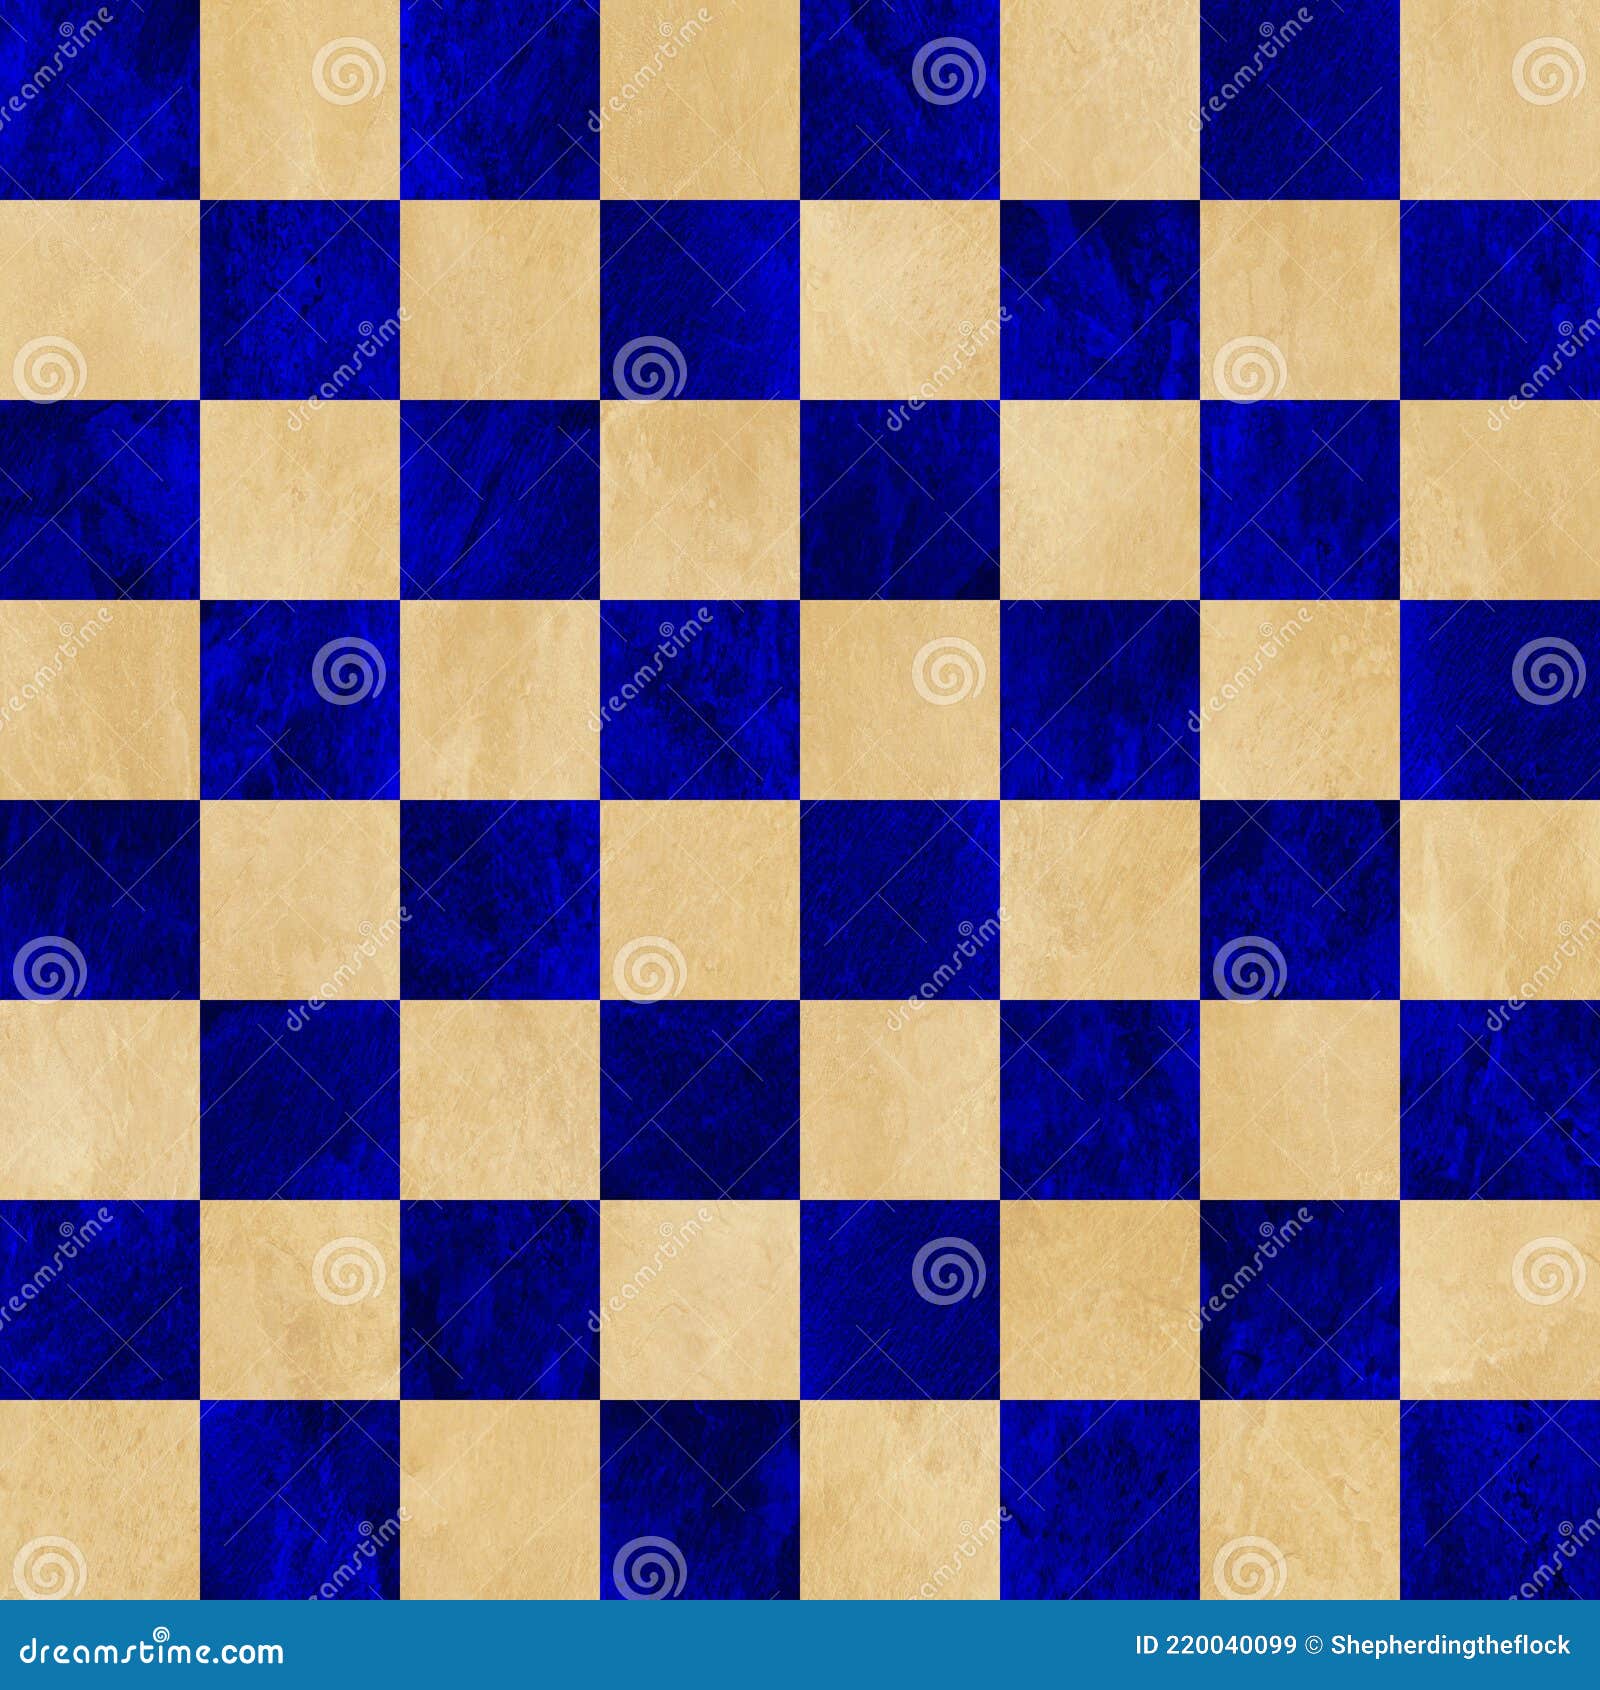 Fundo Azul E Bronzeado Do Tabuleiro De Xadrez. Quadrados